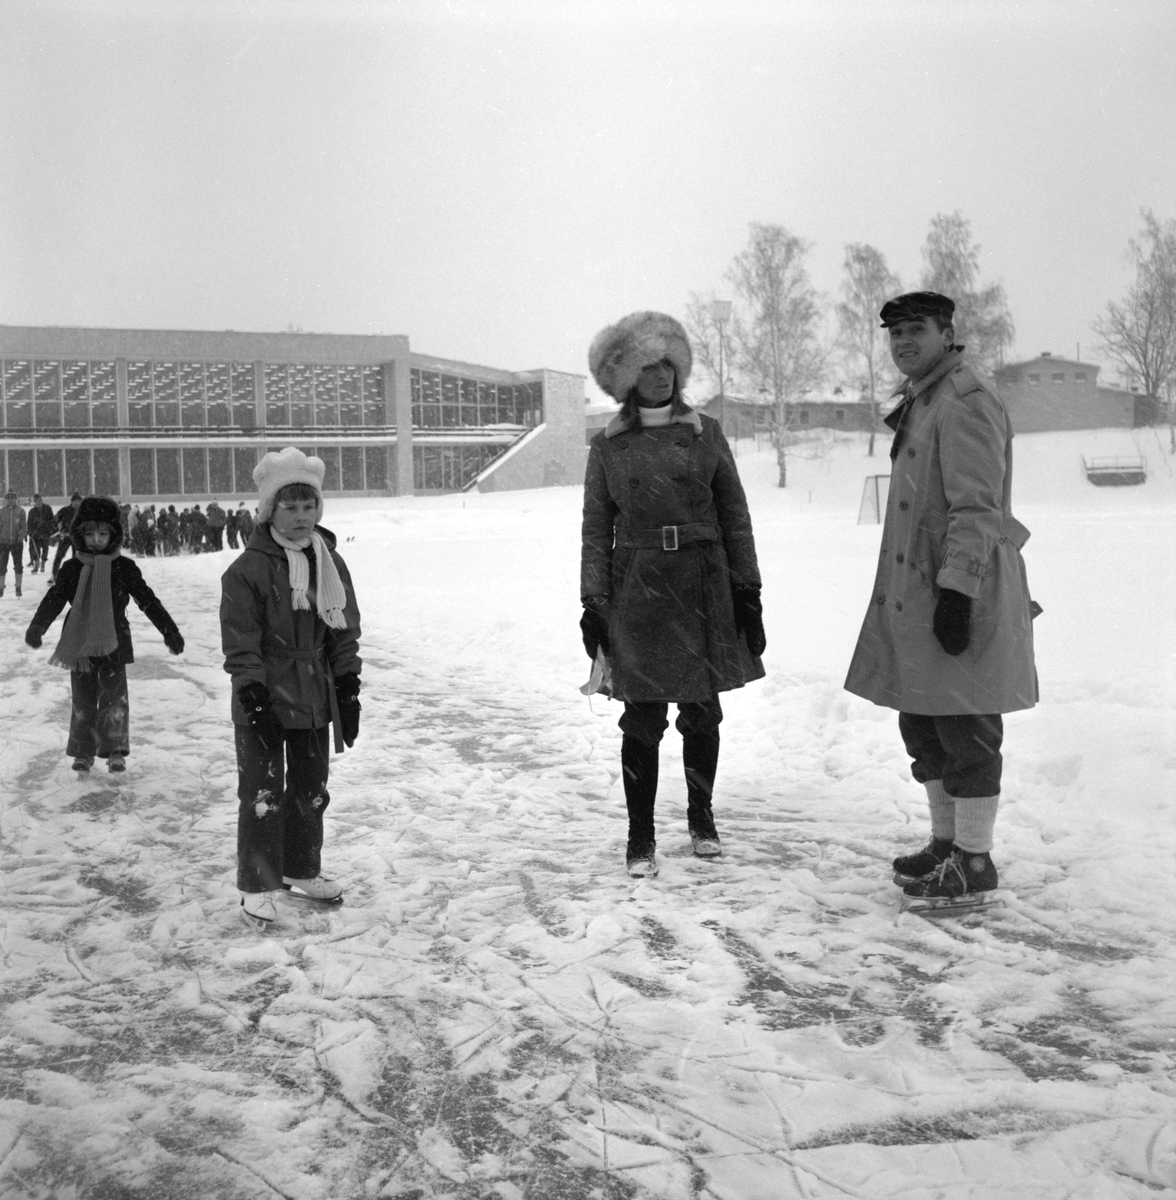 Motionskampen "Skridsko till tusen" har som nationellt engagemang somnat in. Annat förhöll det sig under 1970-talet då "idrottsprins" Bertil invigde arrangemanget från Stockholm. Här ett ögonblick från Linköping och Tinnerbäcksbadets is. Vintern 1972.